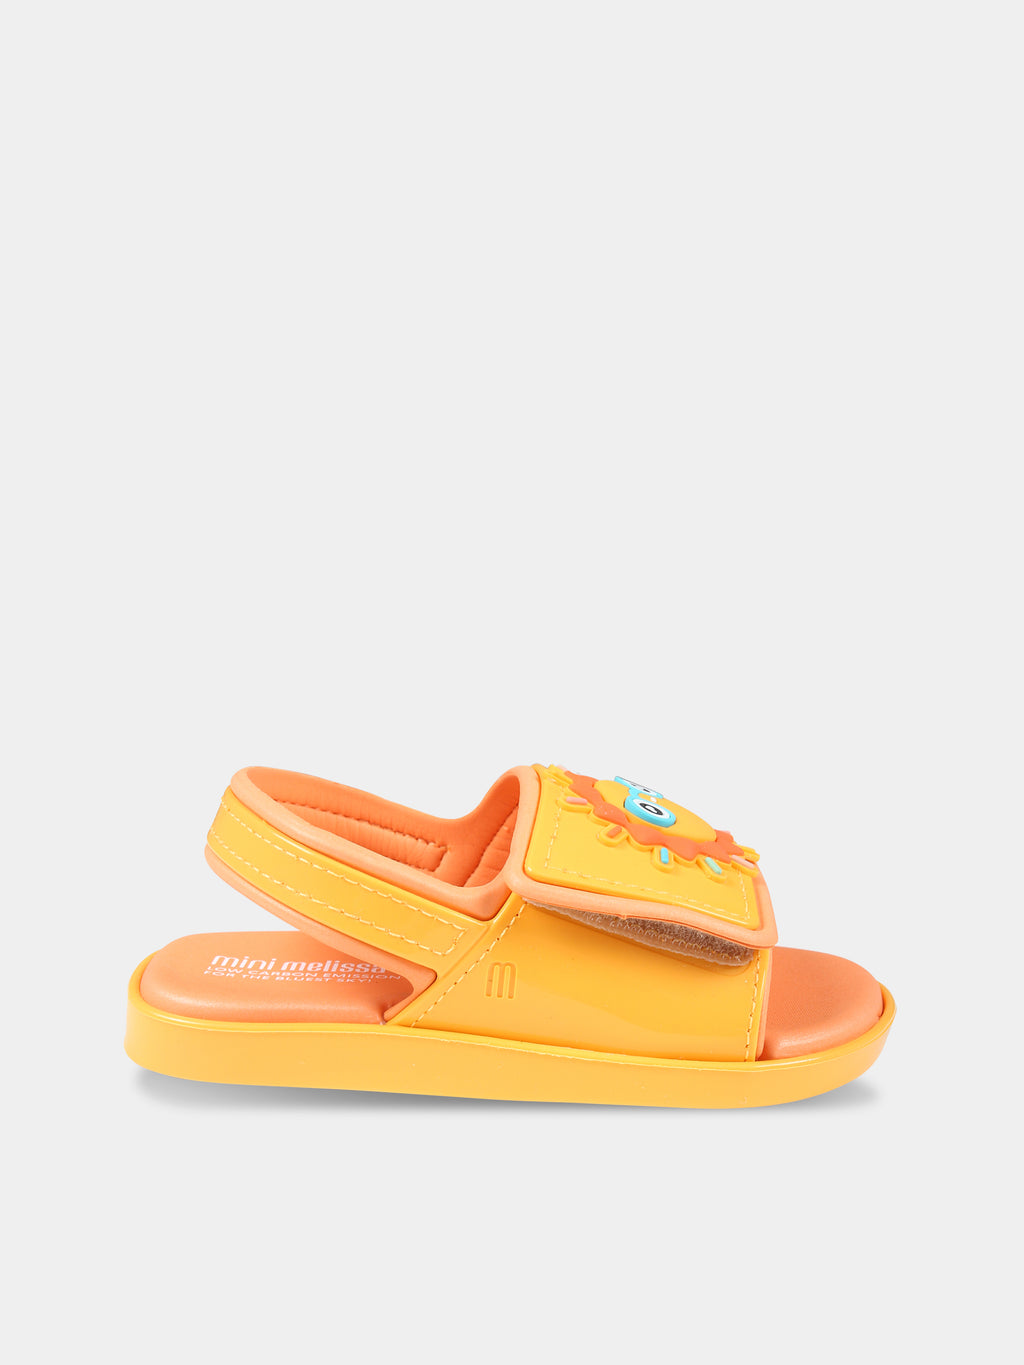 Sandales orange pour fille avec soleil et nuage